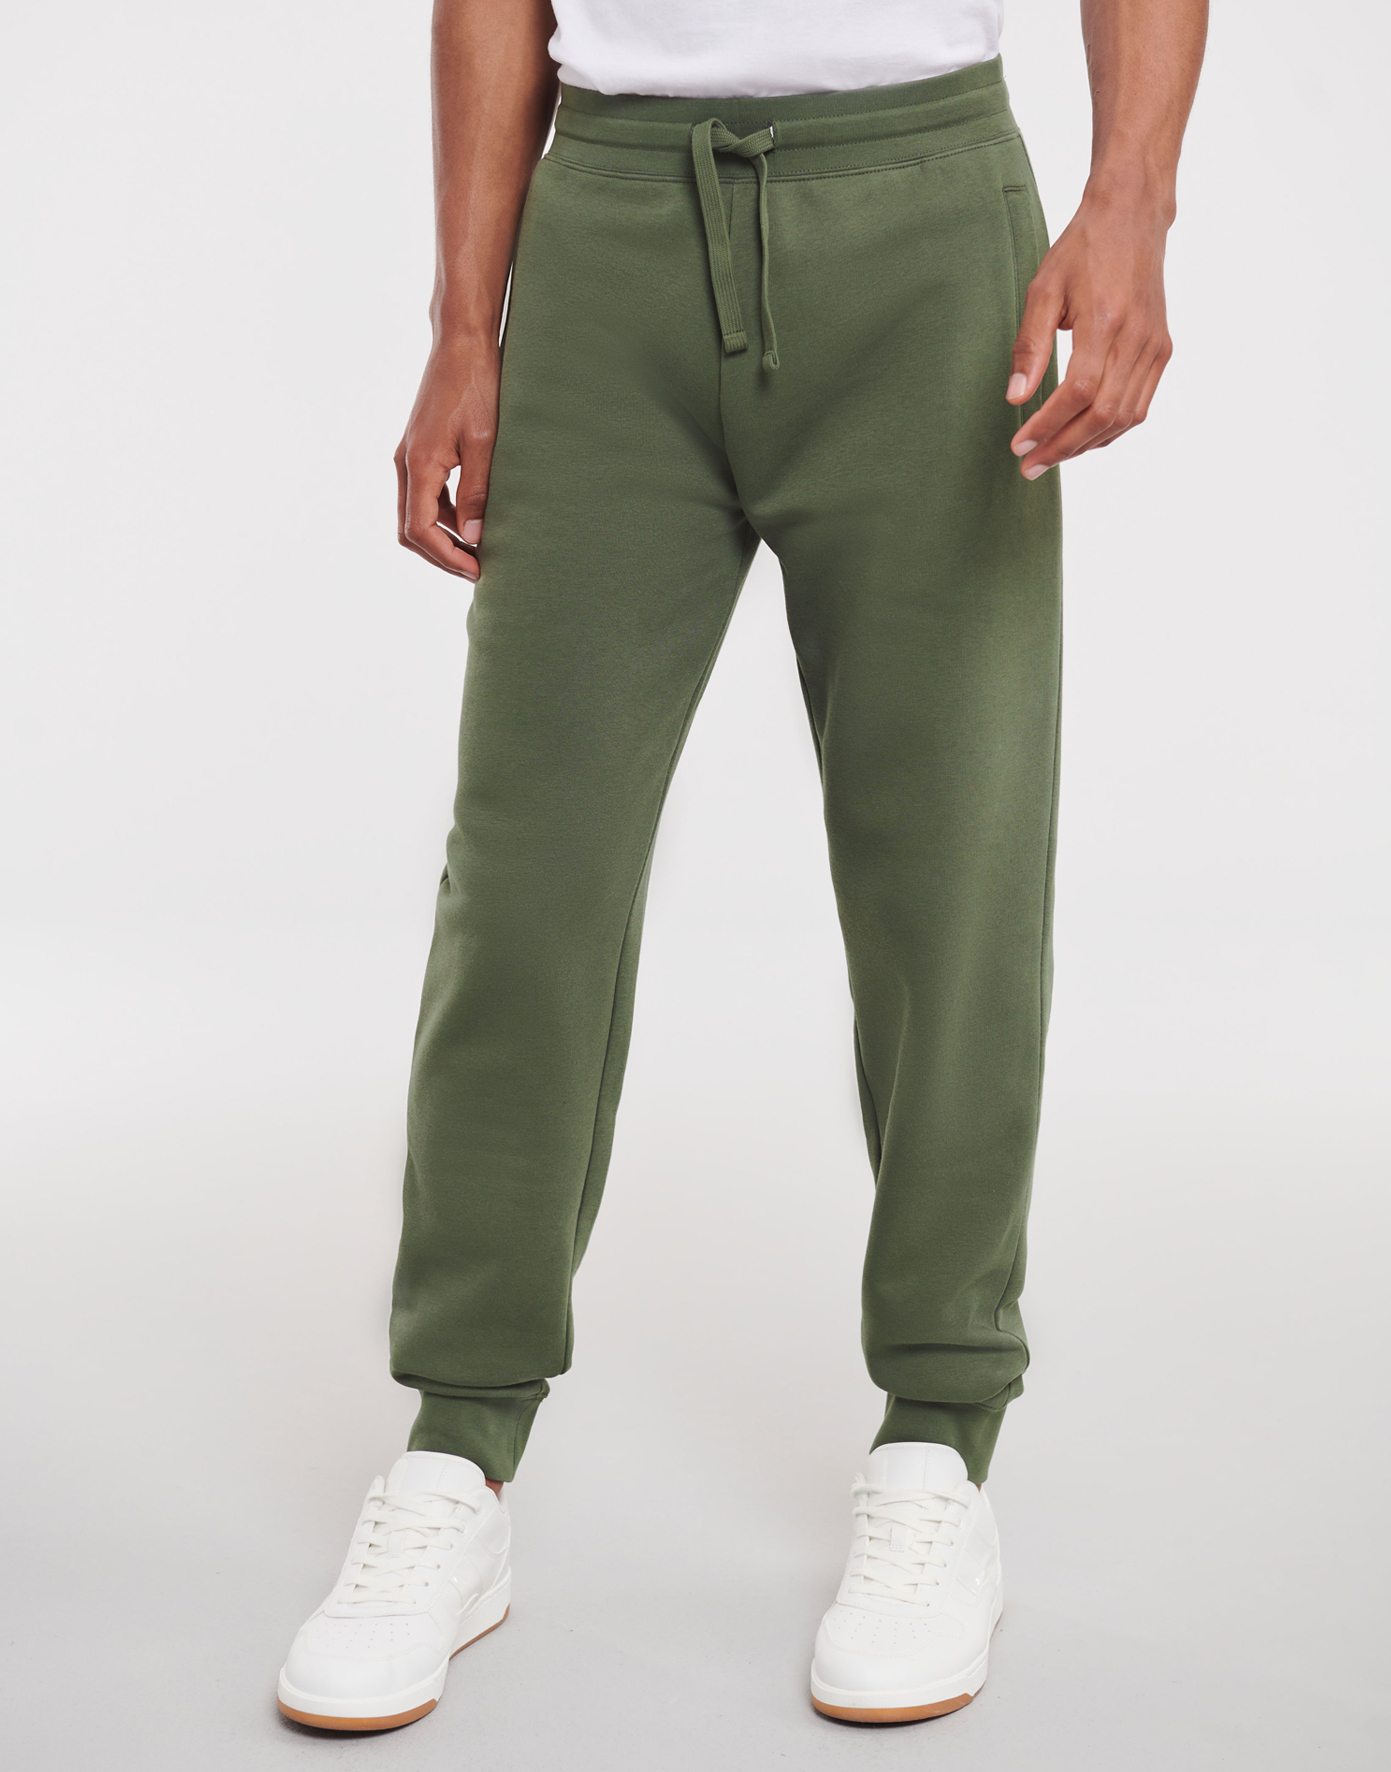 Pánské joggingové kalhoty Velikost: L, Barva: Zelená